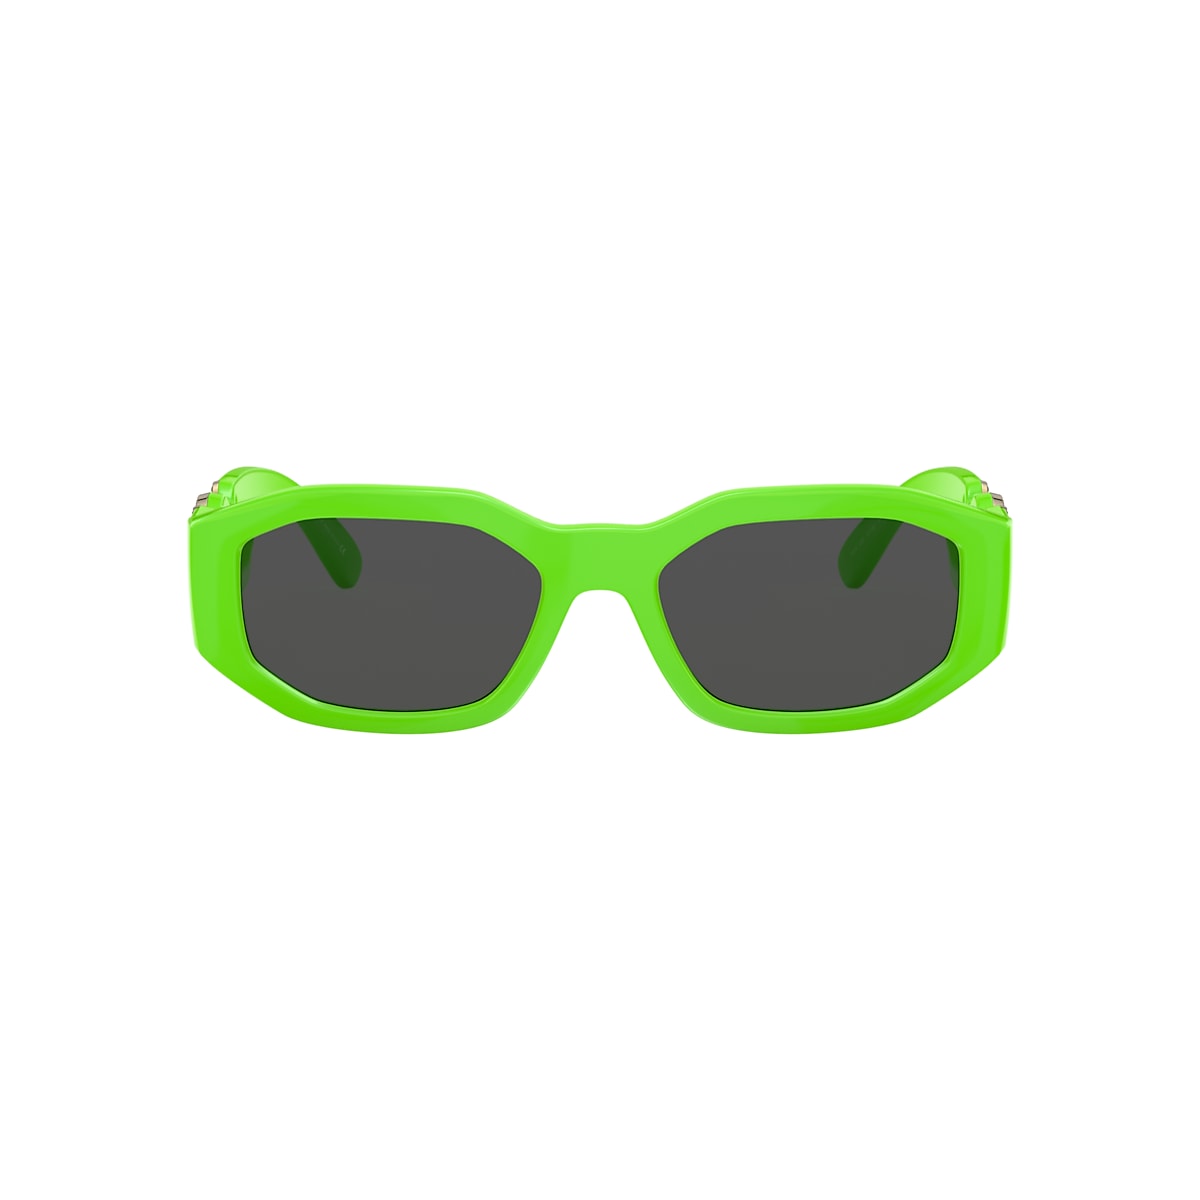 VERSACE VE4361 Biggie Green Fluo - Men Luxury Sunglasses, Dark Grey Lens